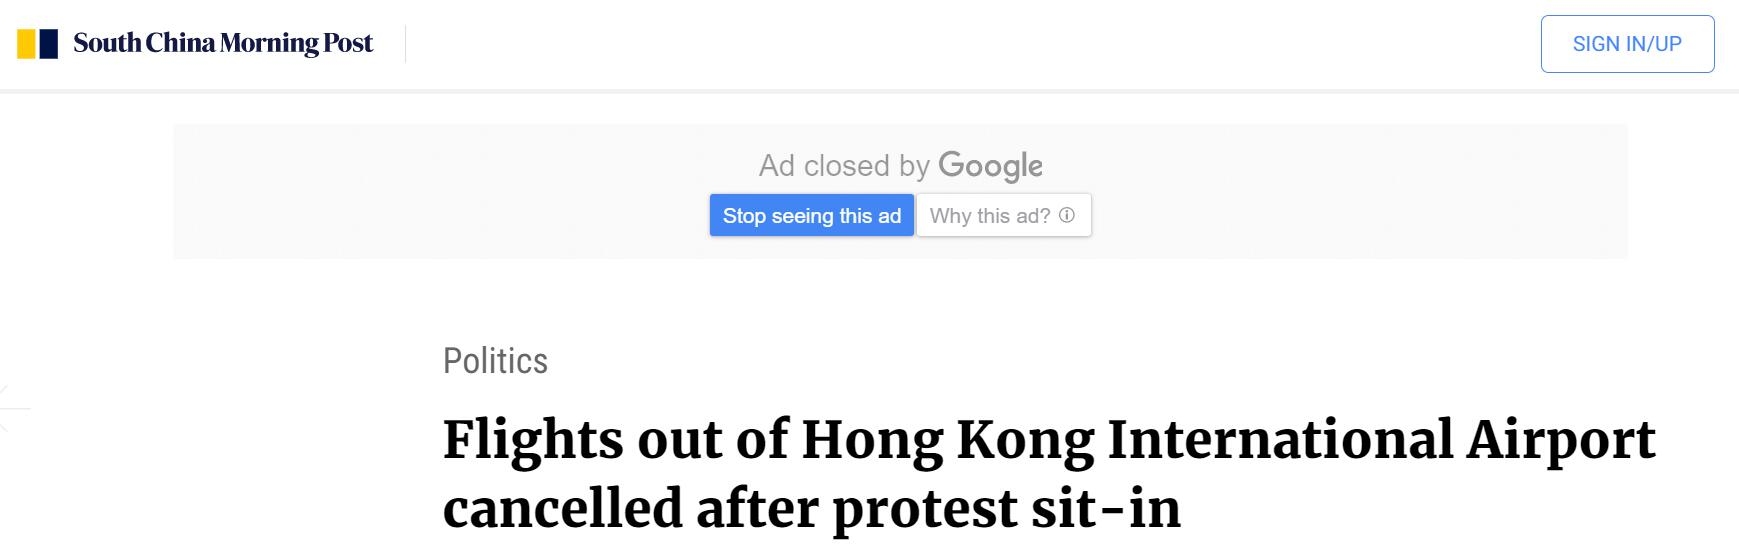 受机场集会影响 香港国际机场取消所有出港航班